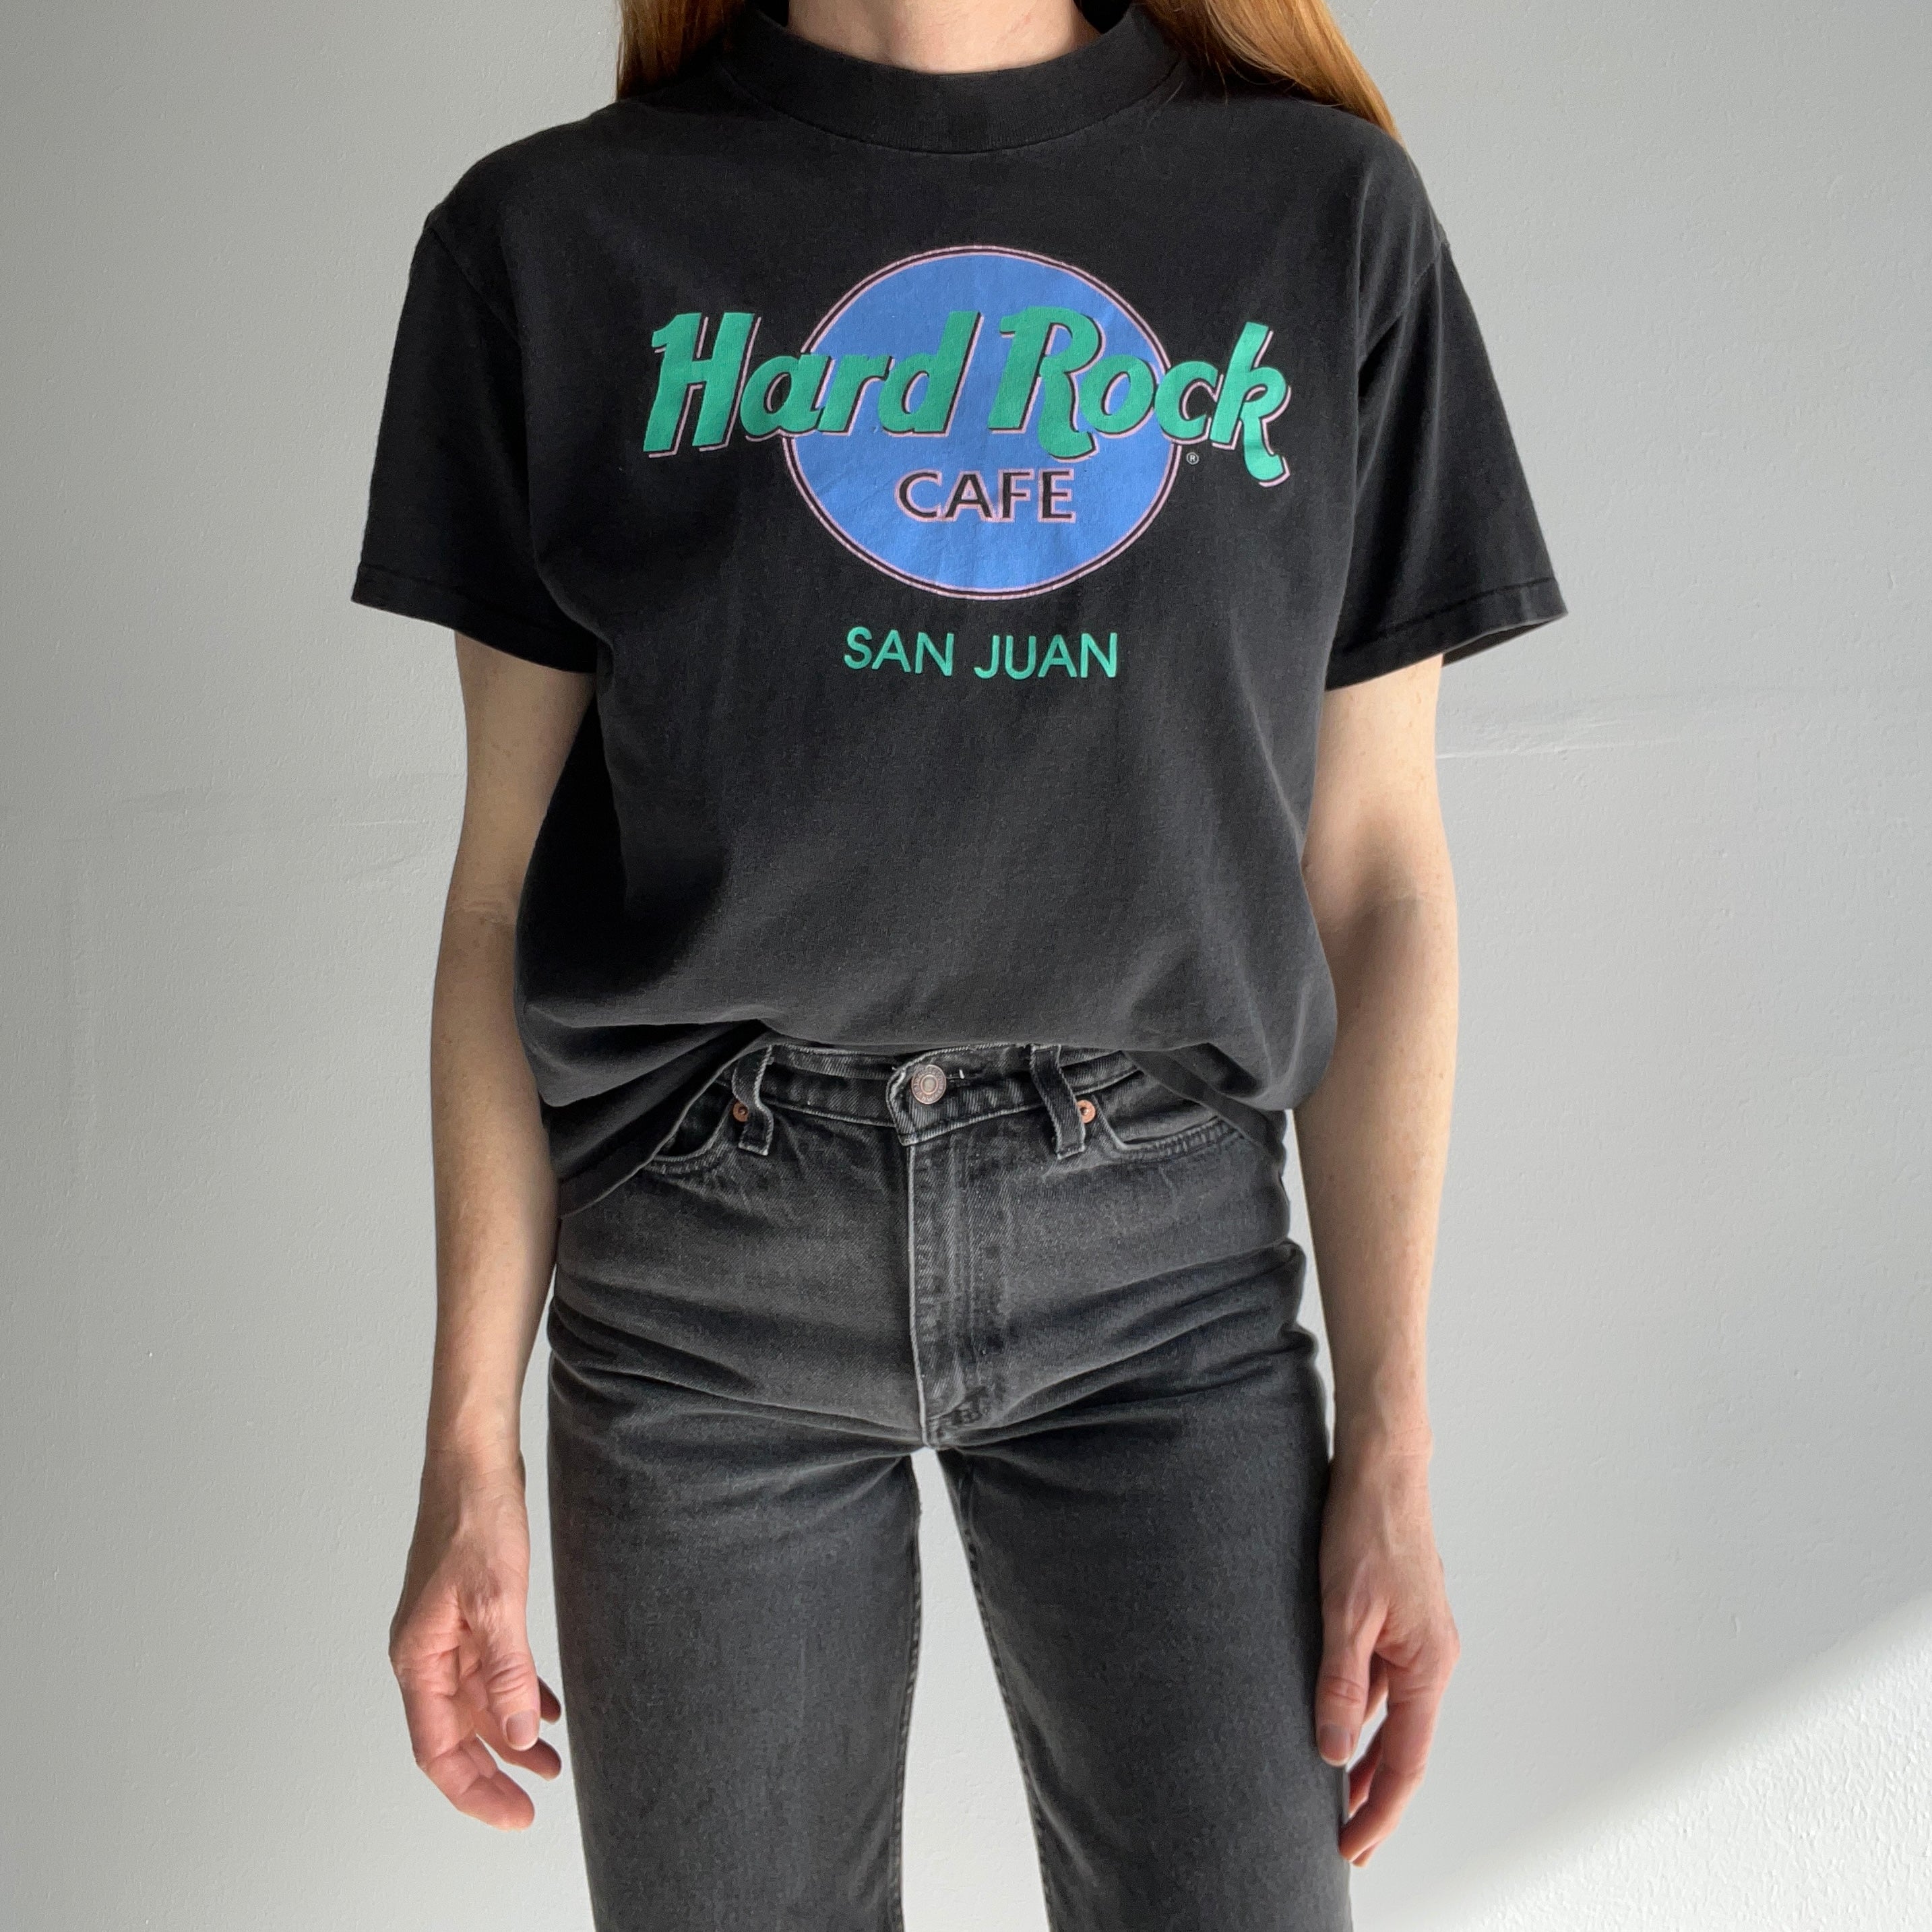 1980/90s San Juan Hard Rock Cafe Cotton T-Shirt